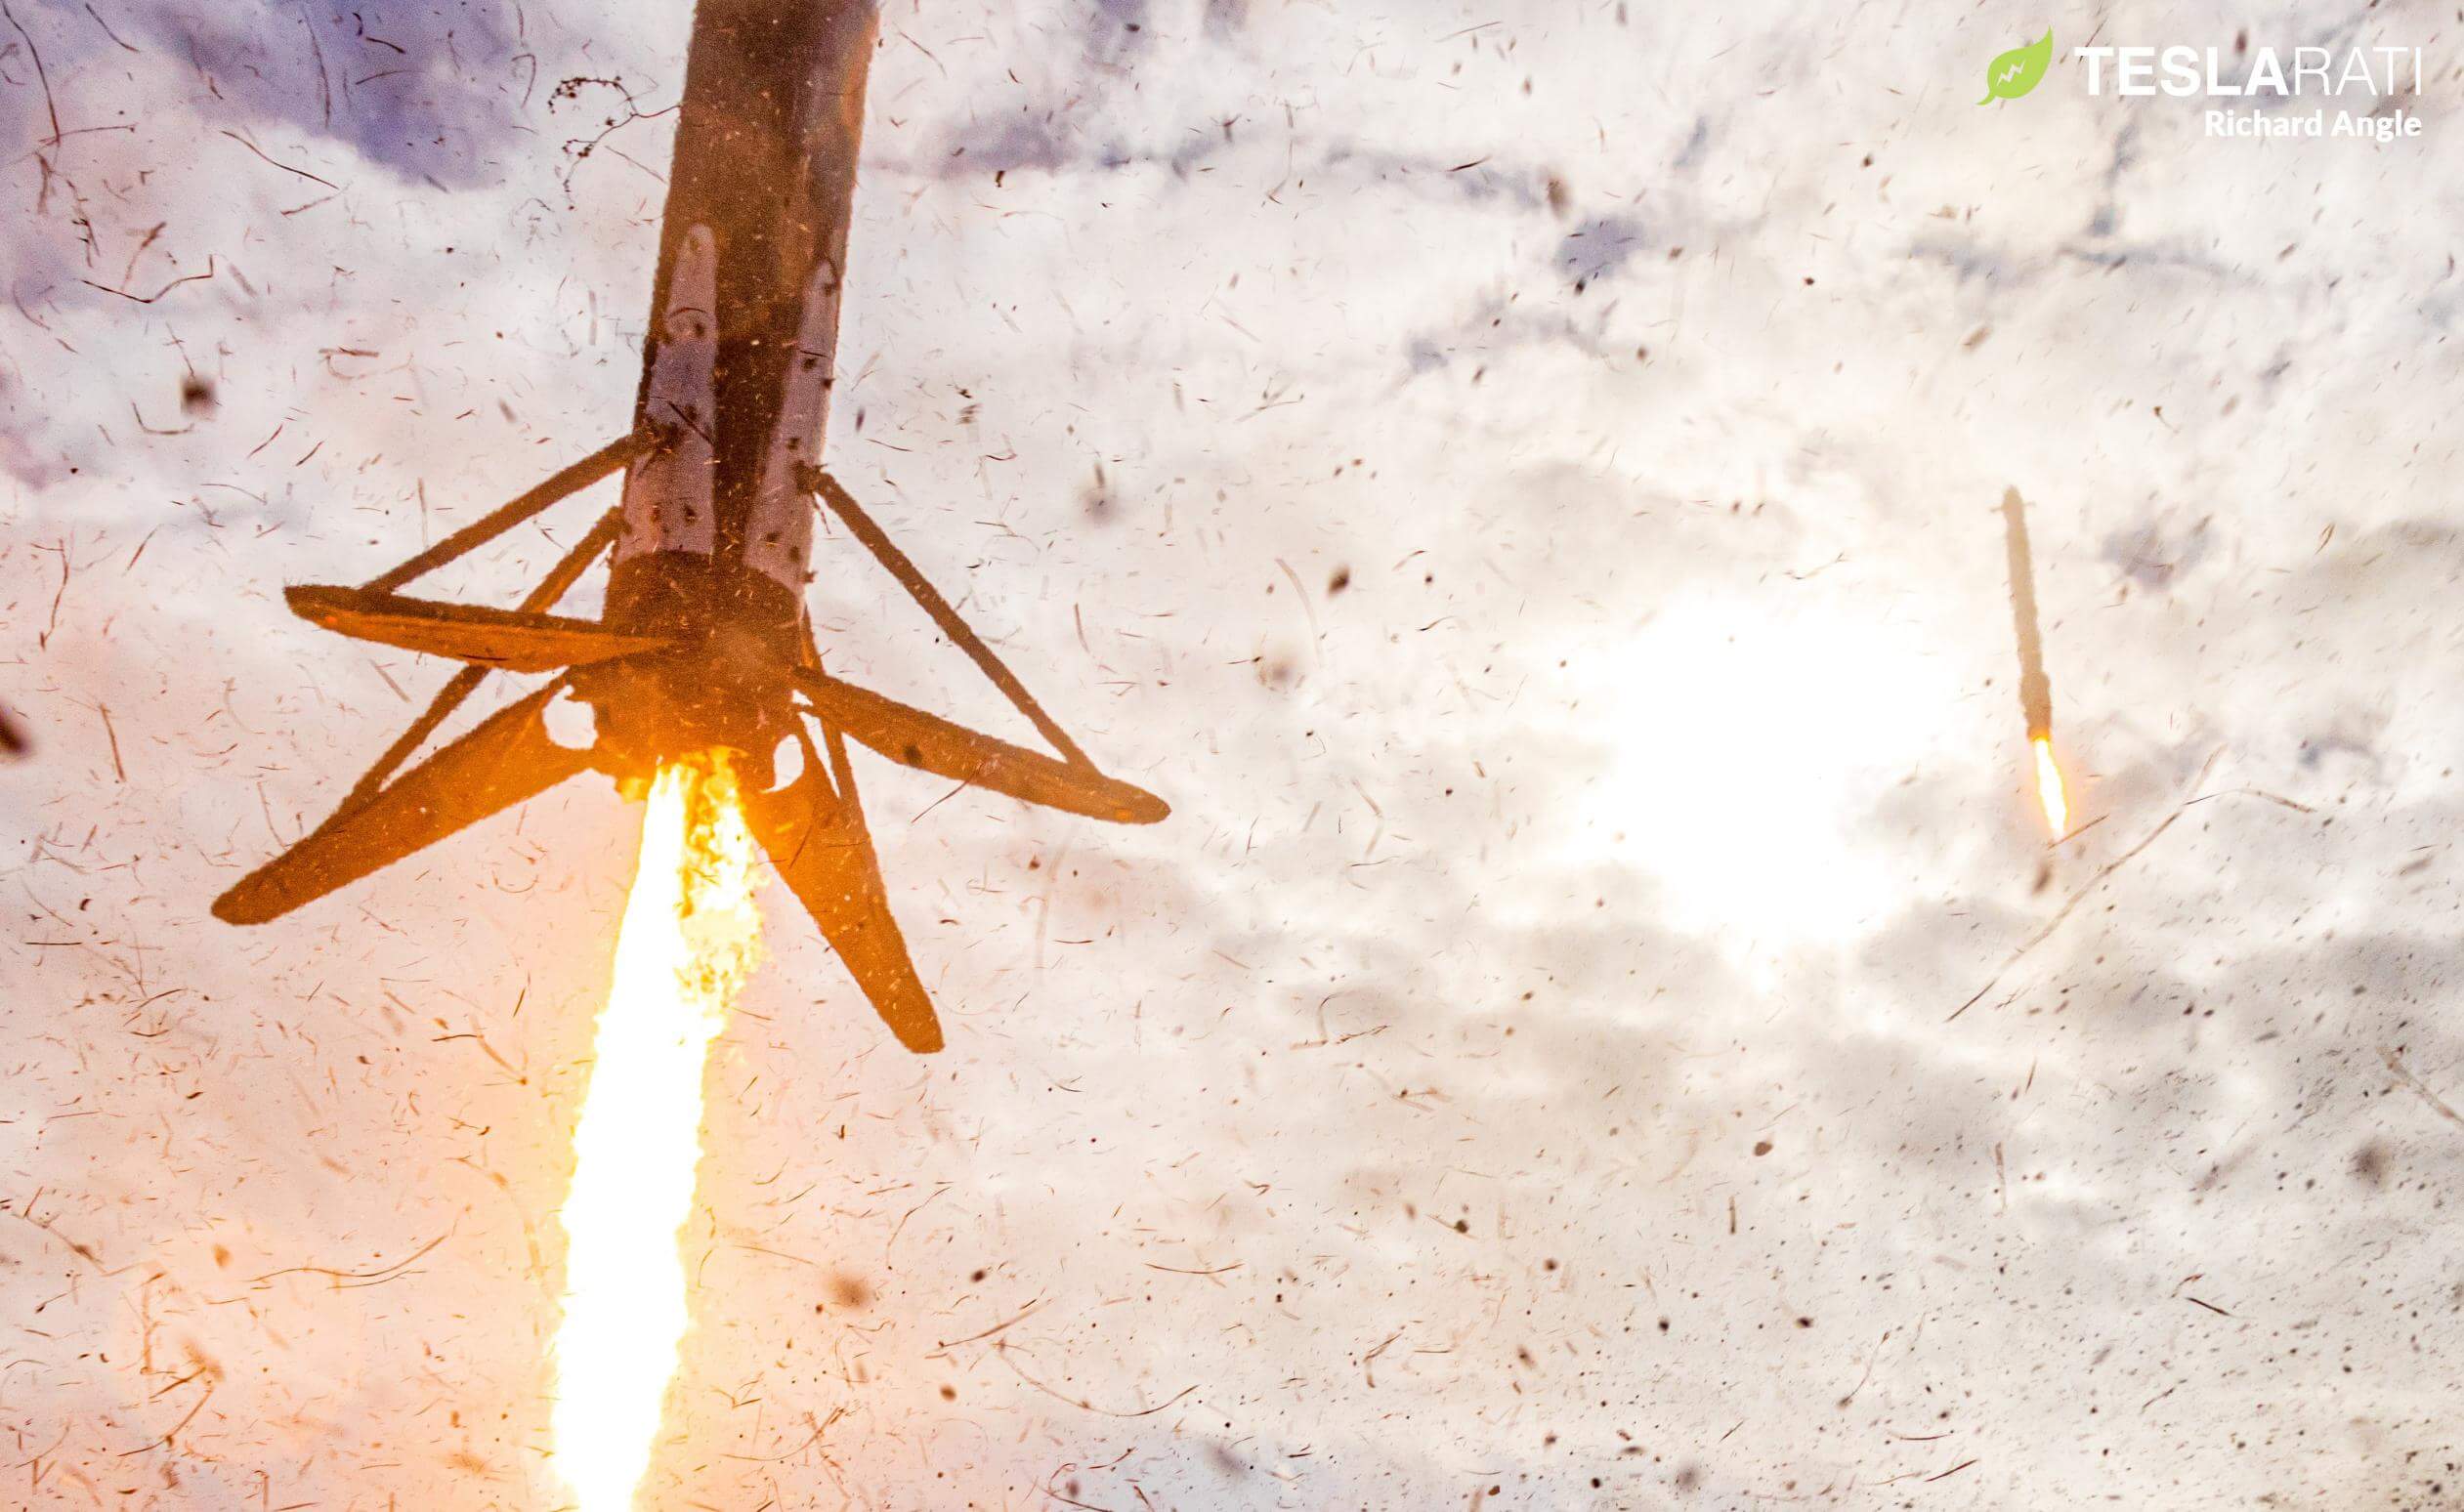 SpaceX的猎鹰重型火箭在中断三年后重新投入使用